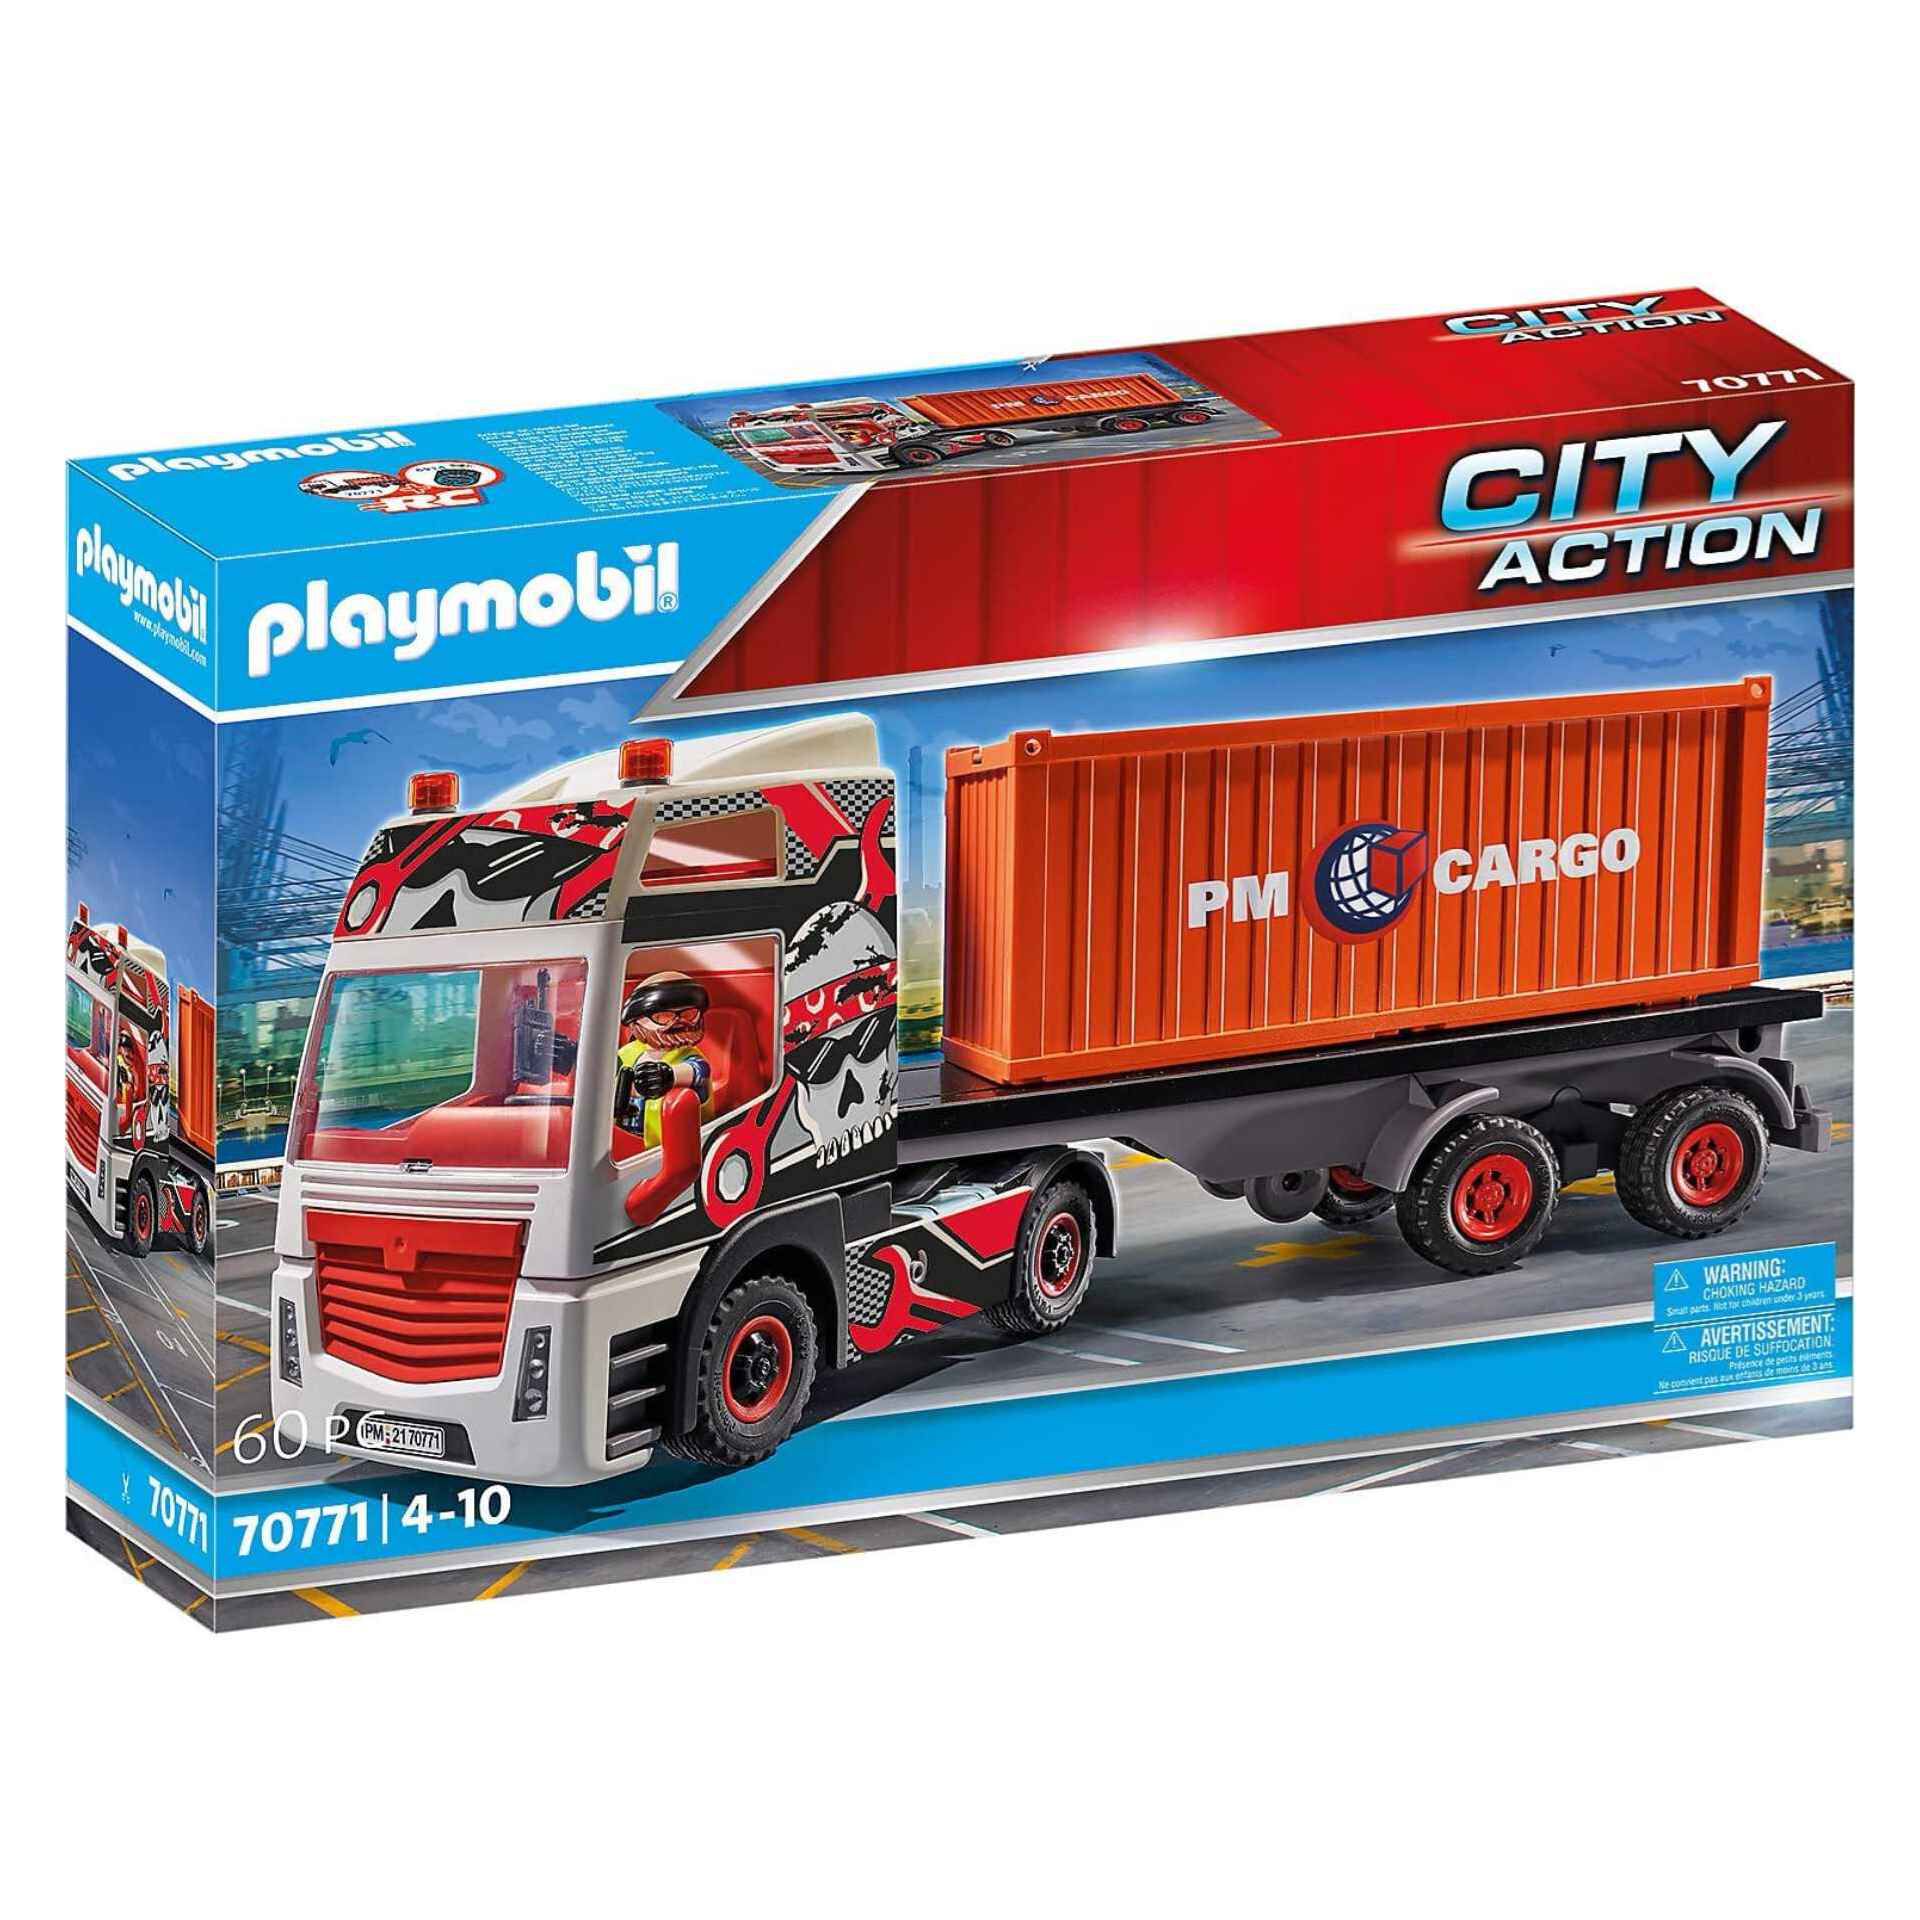 Playmobil 70775 City Acción Cargo control aduanero Niños Childrens Juguete 4 años 